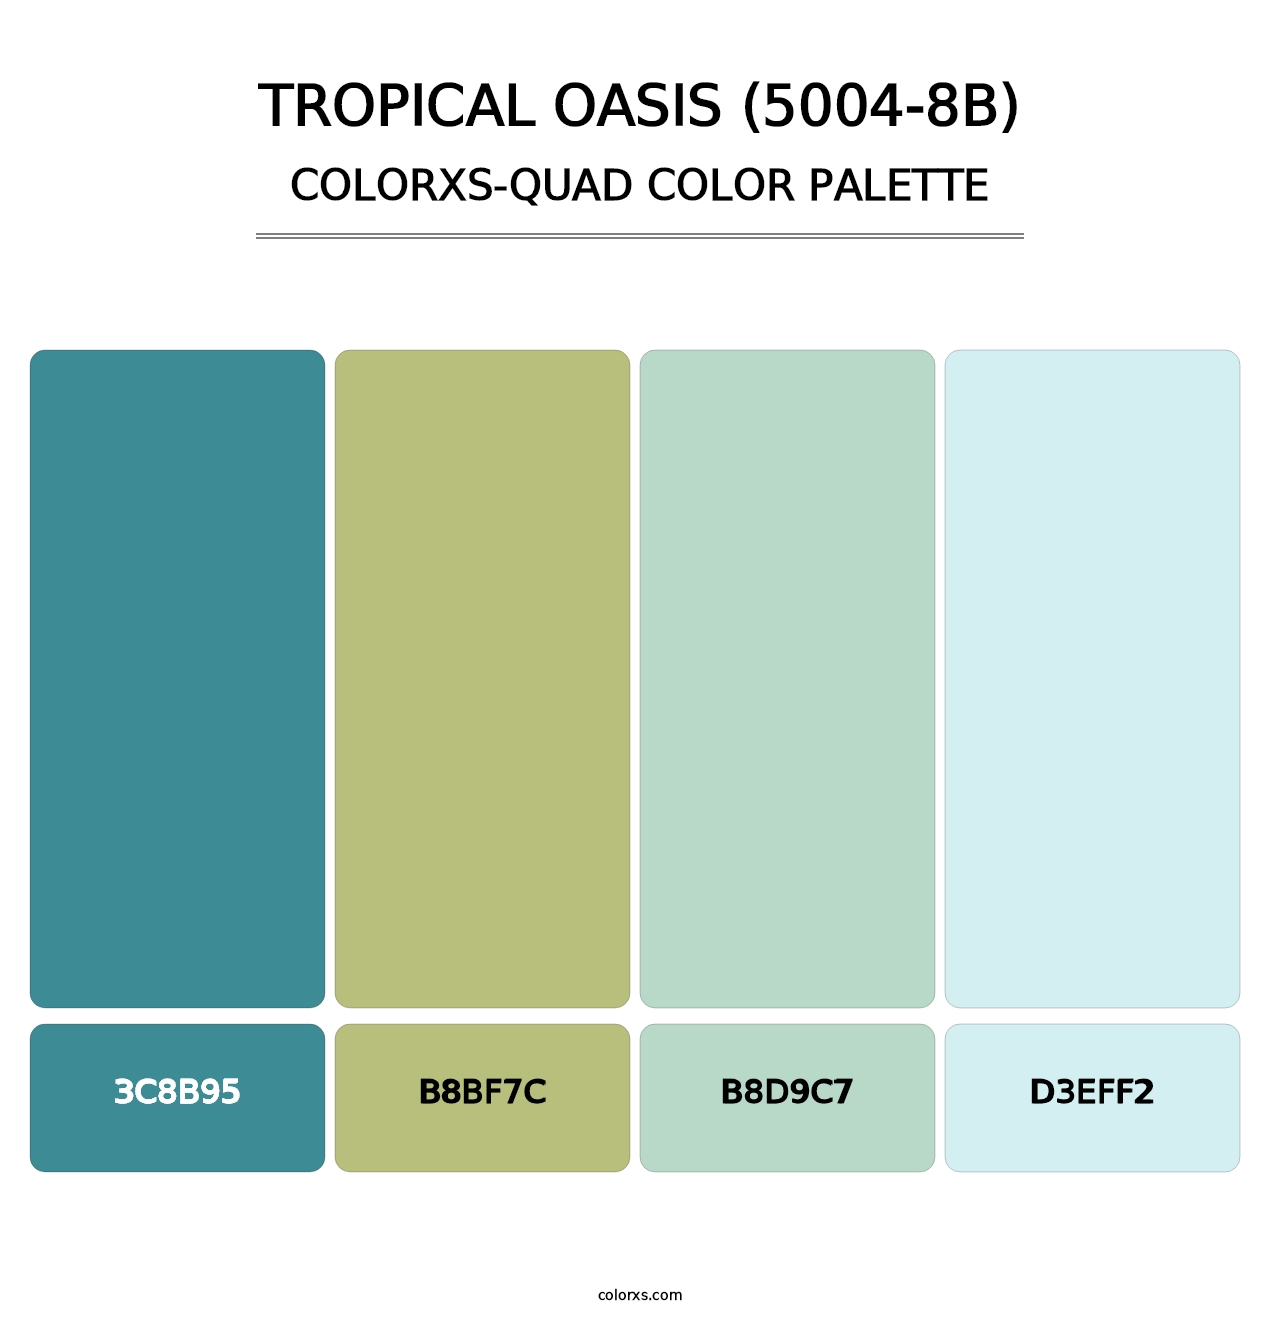 Tropical Oasis (5004-8B) - Colorxs Quad Palette